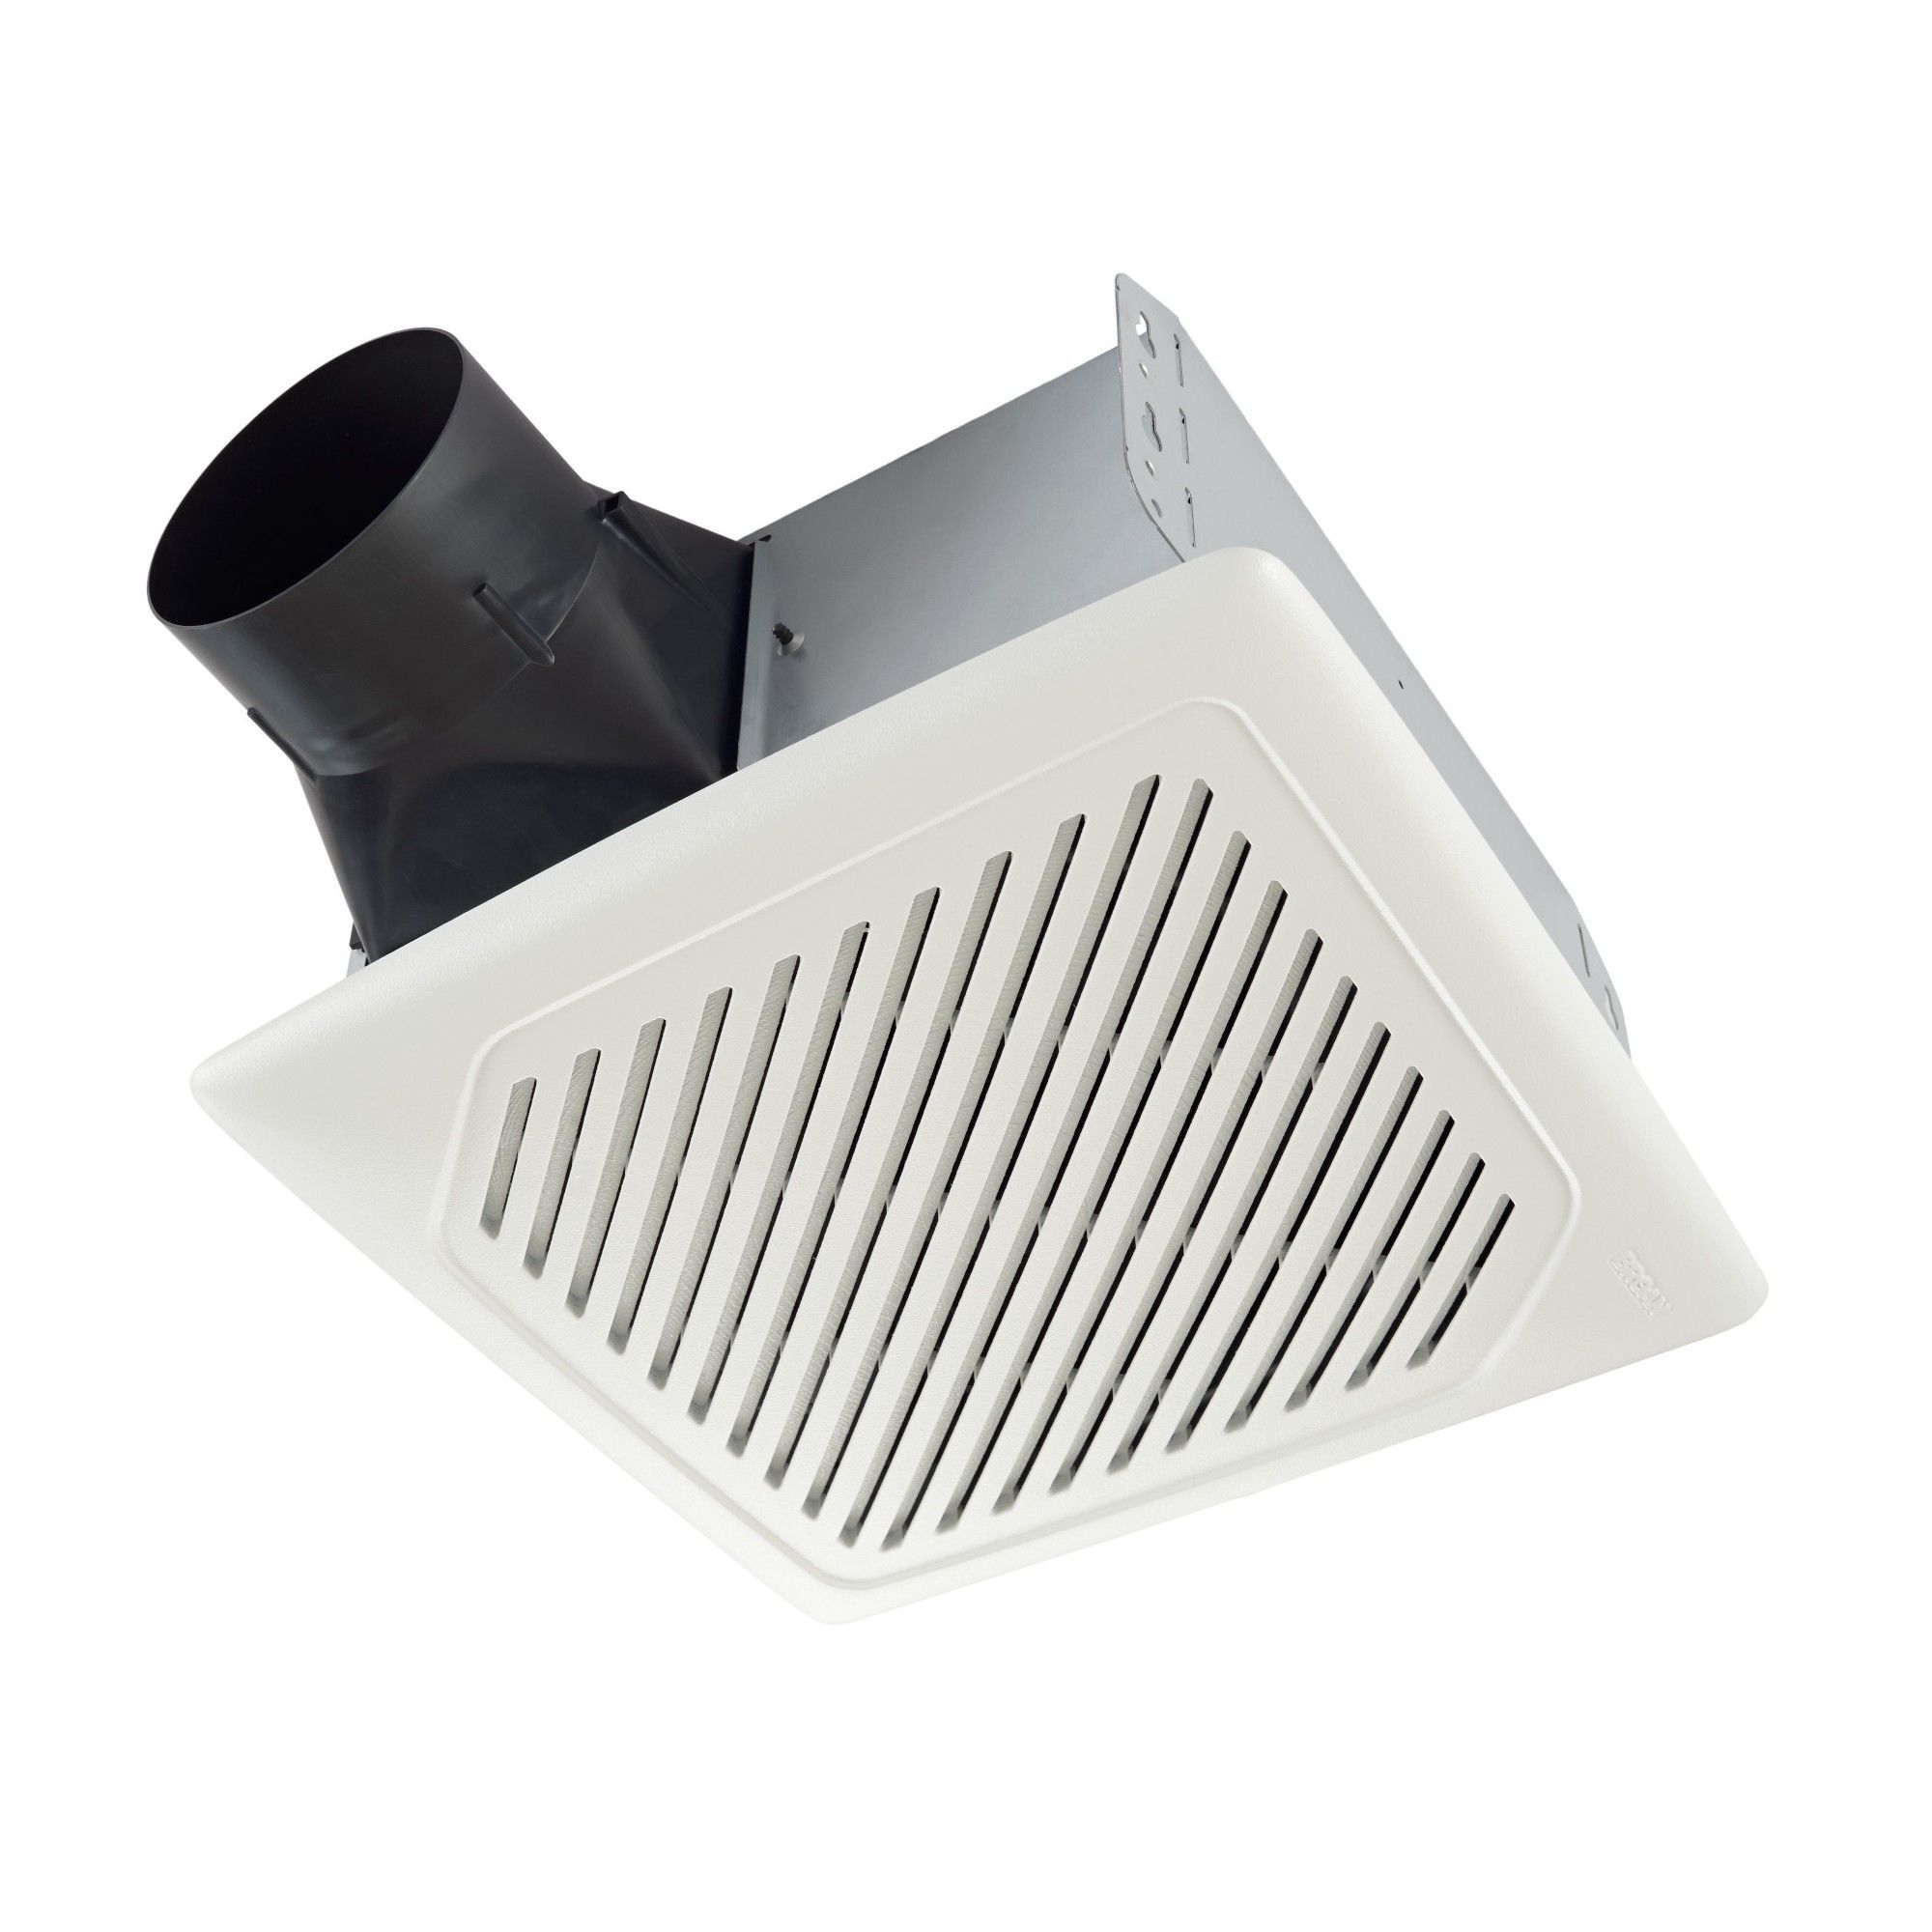 Tuyaux et conduits de ventilation/chauffage - Ventilation - Aération -  Matériaux - Canac